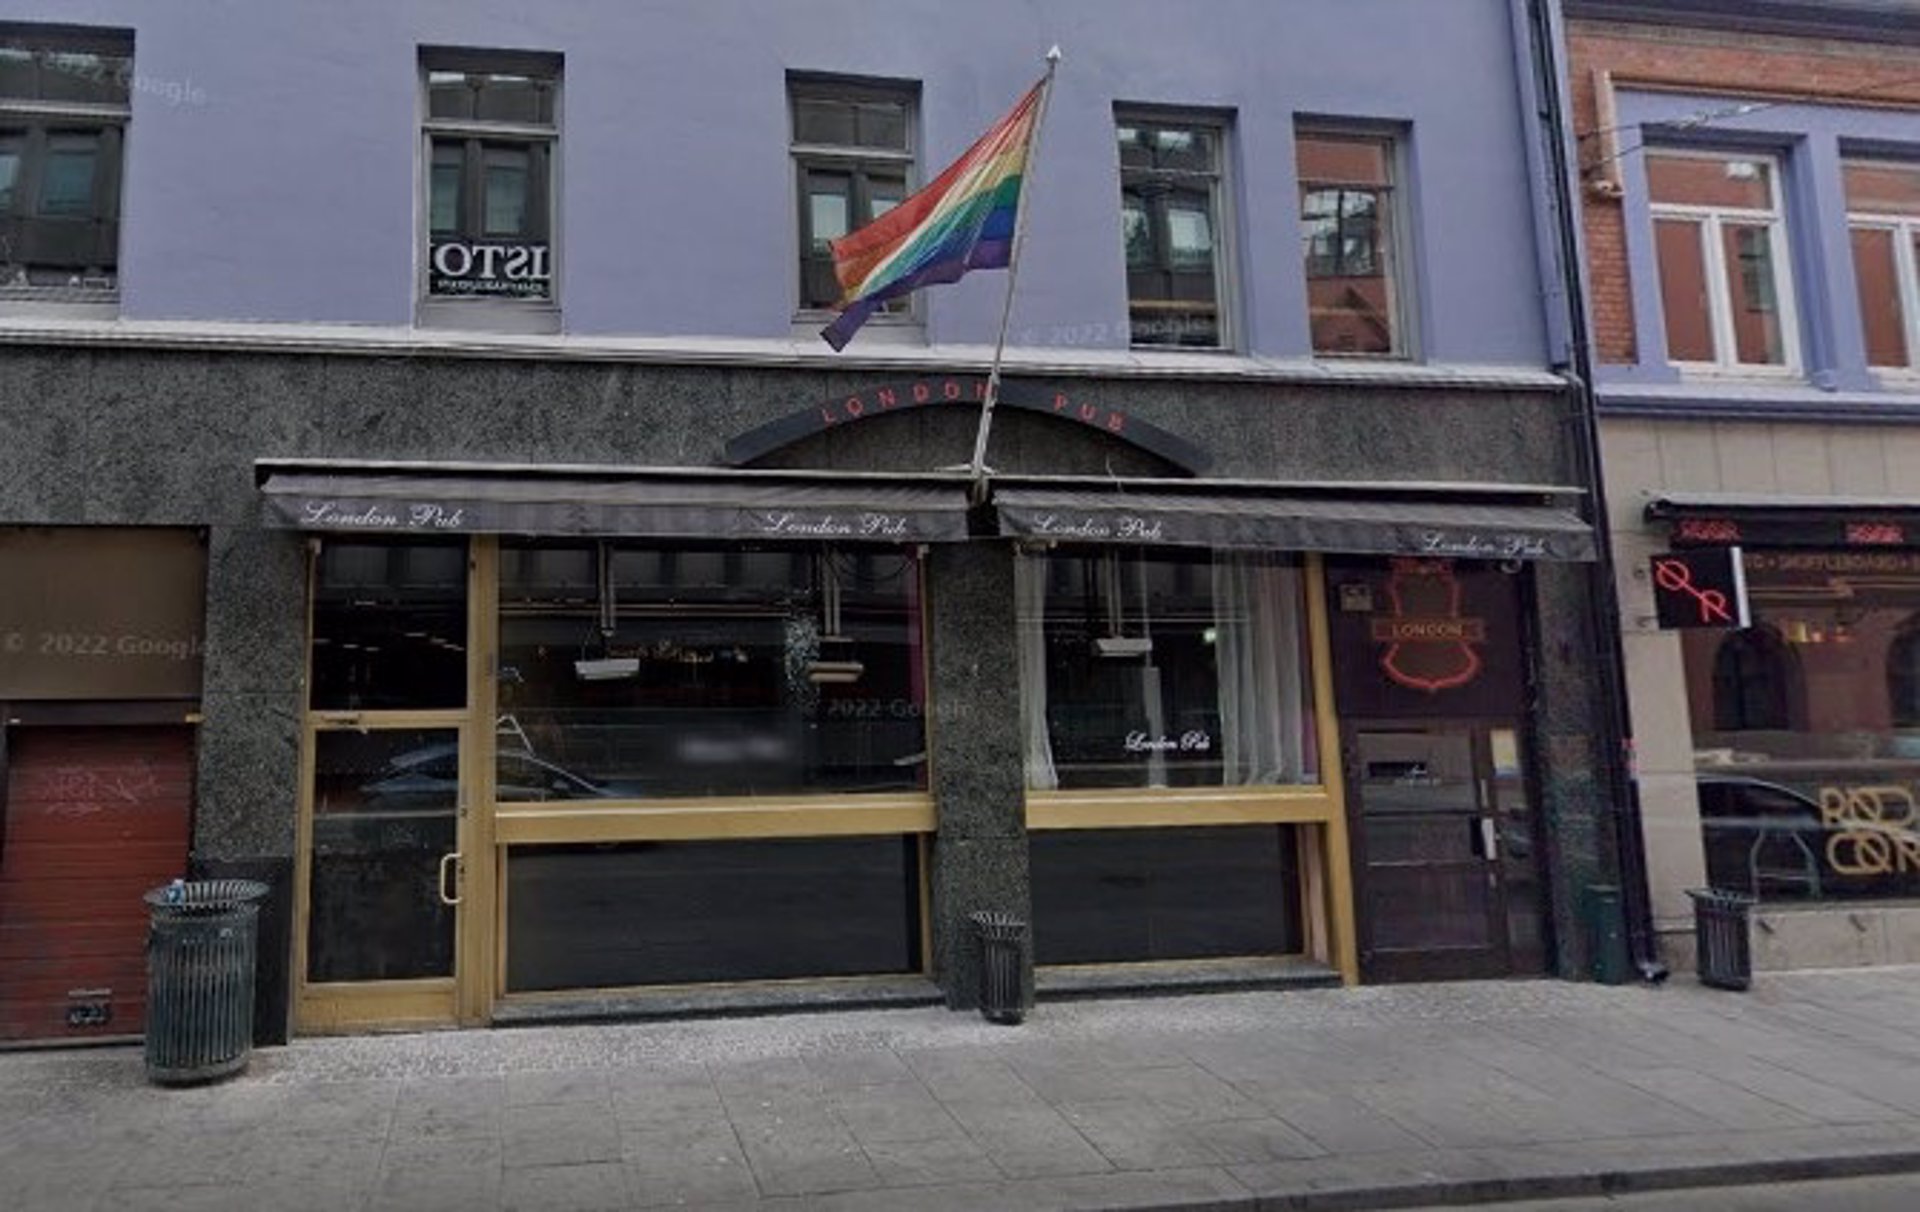 La Policía noruega confirma dos muertos y 21 heridos en el ataque terrorista al pub LGBTI de Oslo